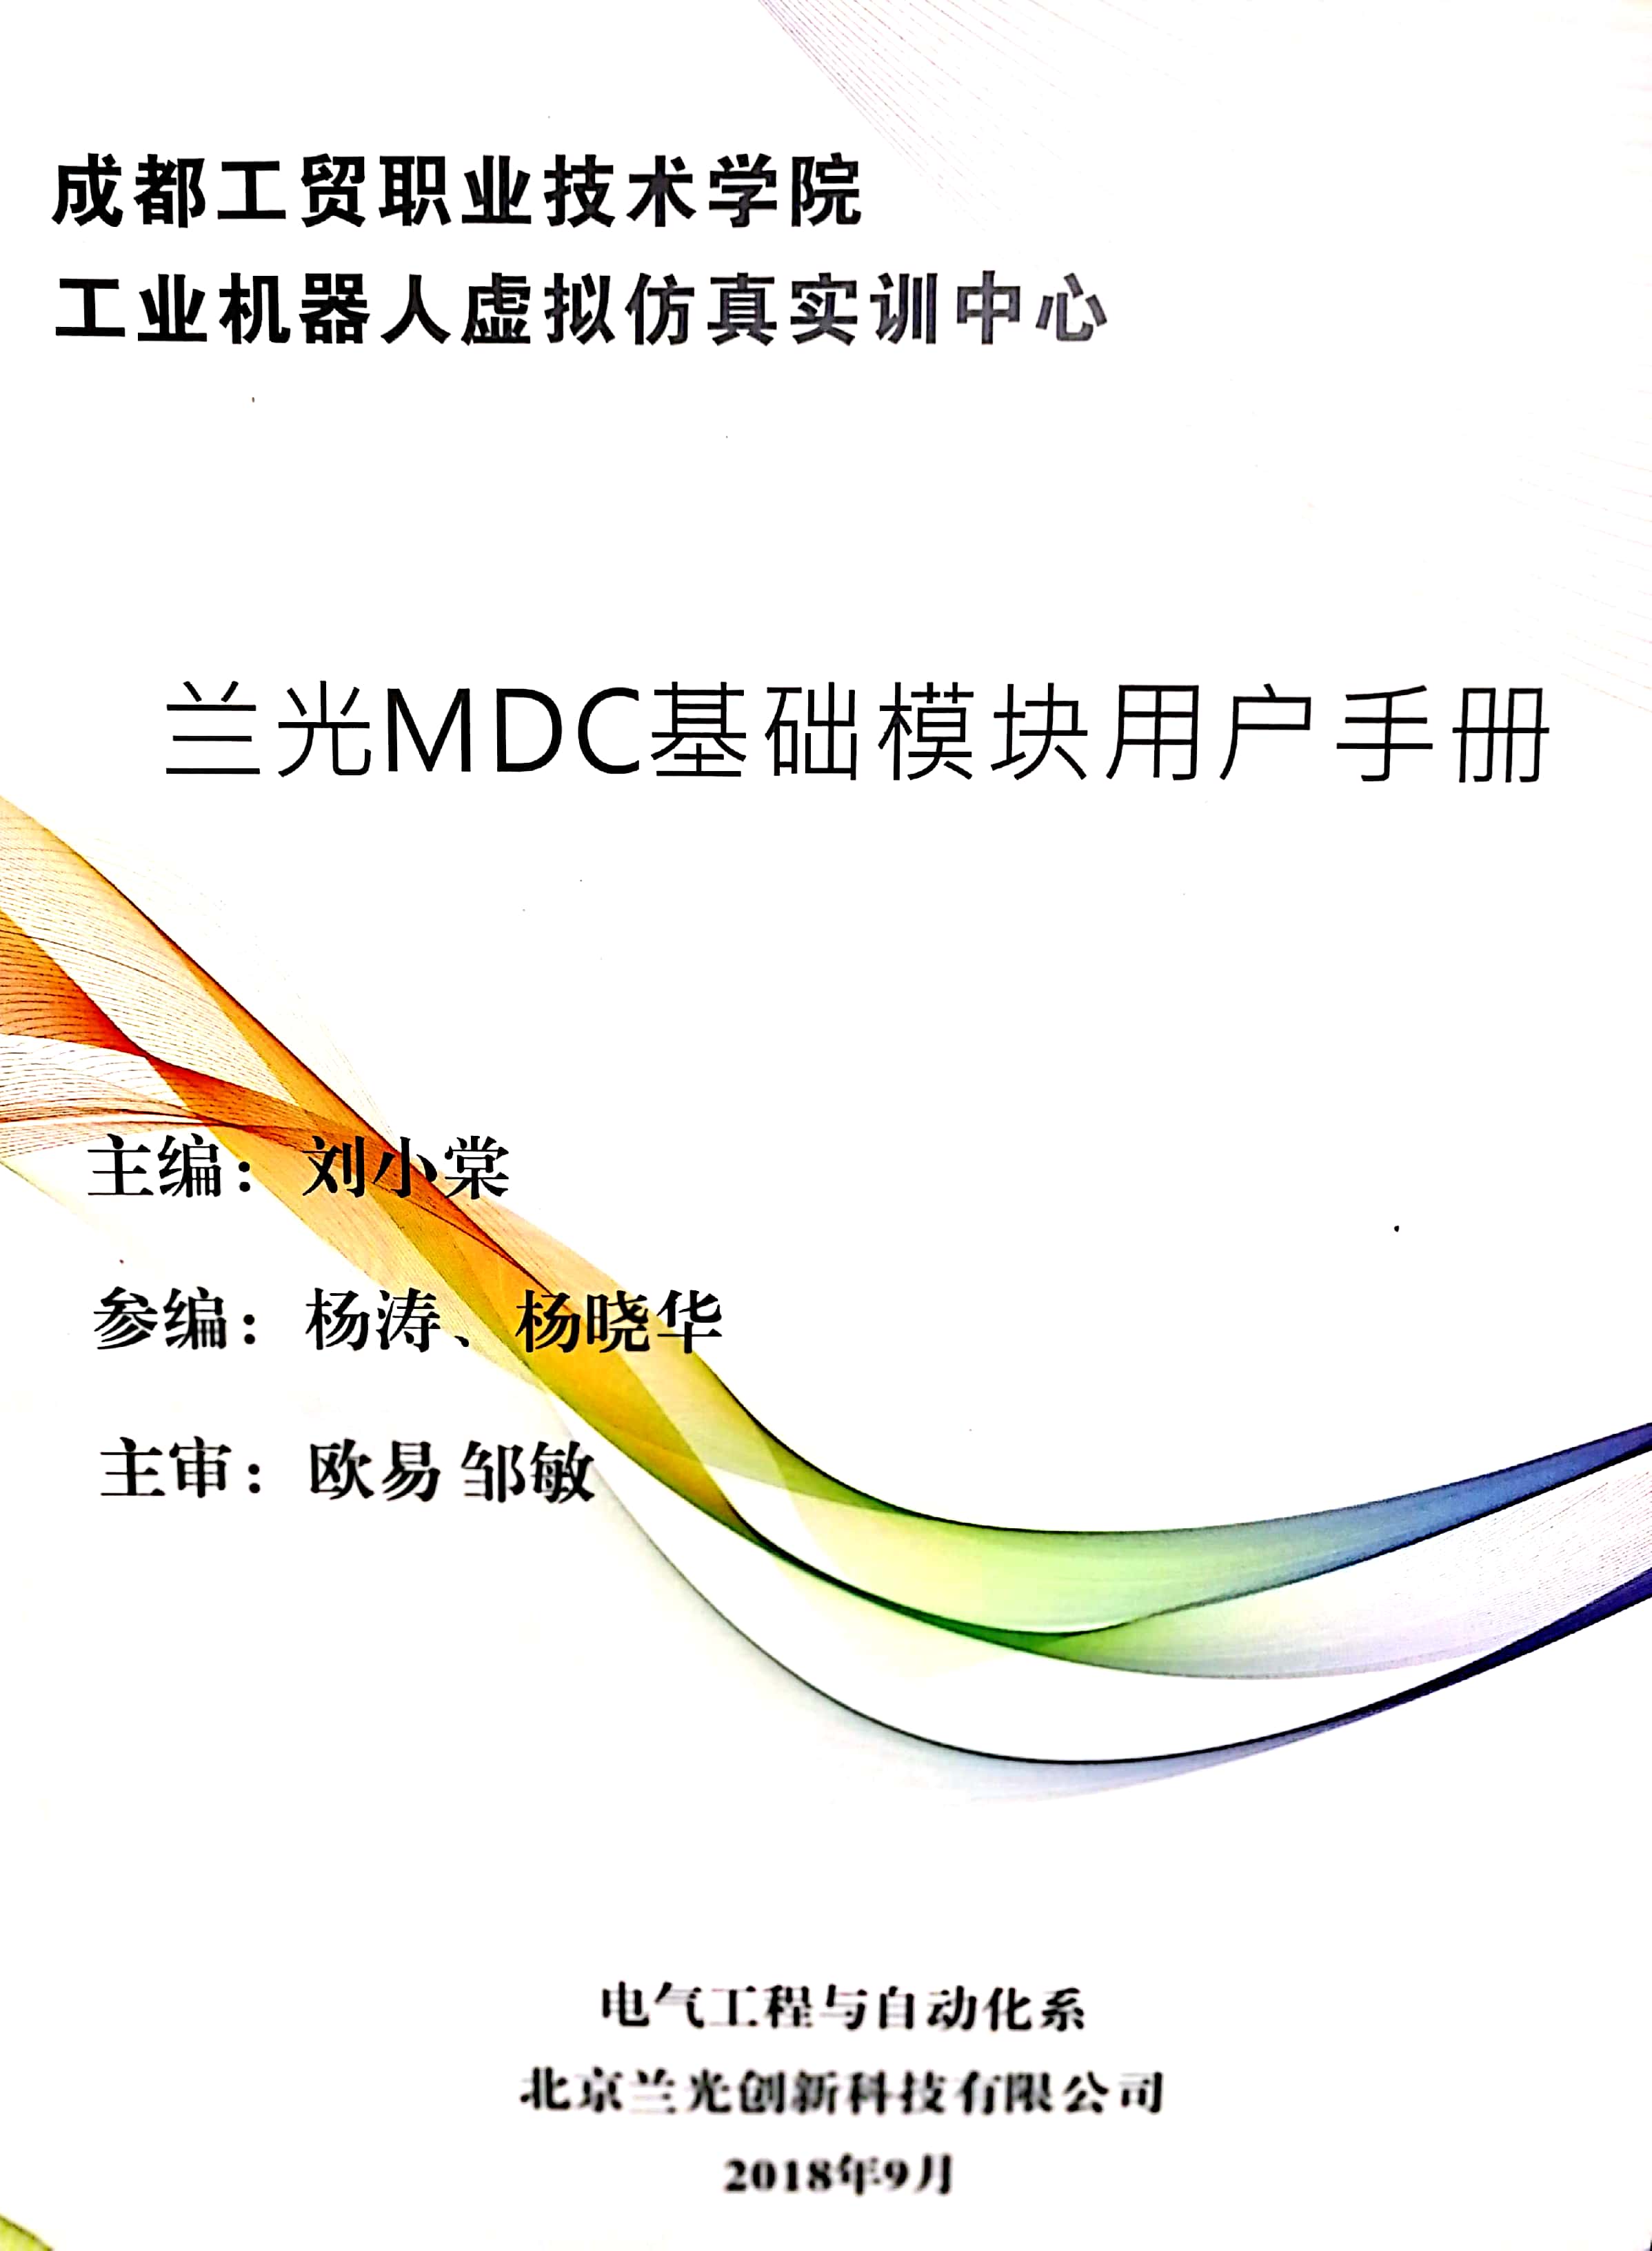 兰光MDC基础模块用户手册.jpg